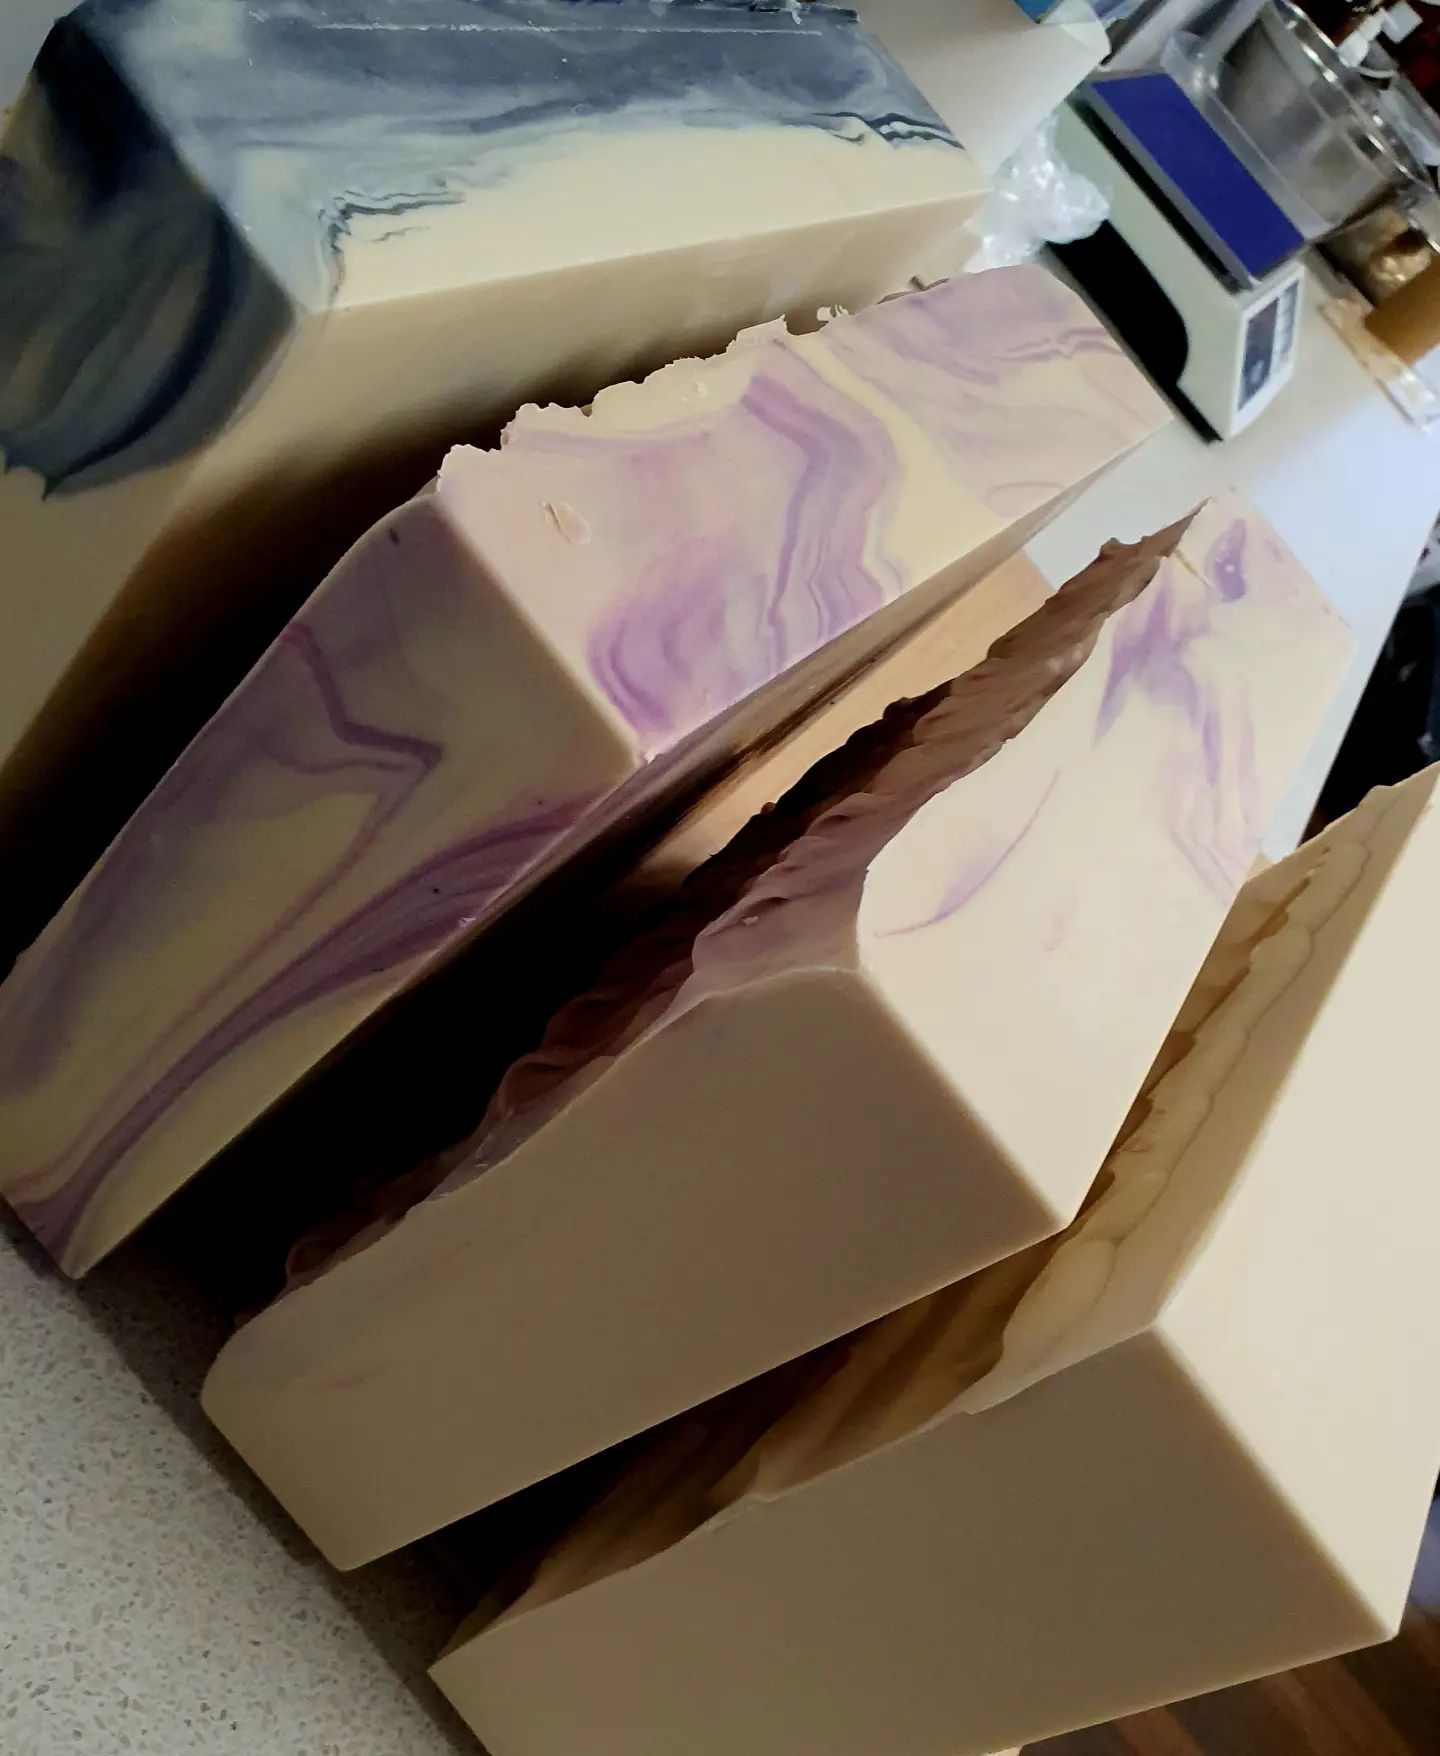 Takto vyzera 40 kg voňavého mydla 🙈🙉🧼. Naša dielnička je na vianoce 🎄🎁 pripravená 💪💪. A čo vy? Máte už darčeky? 🎁🎁🎁

#mydielkaren #mydlo #darcek #regionalnyprodukthorehronie #medovemydlo #svieckazvceliehovosku #prirodnakozmetika #bezobal #zerowaste #med #madeinslovakia🇸🇰 #nechajtepeniazenahorehroni #darceknavianoce